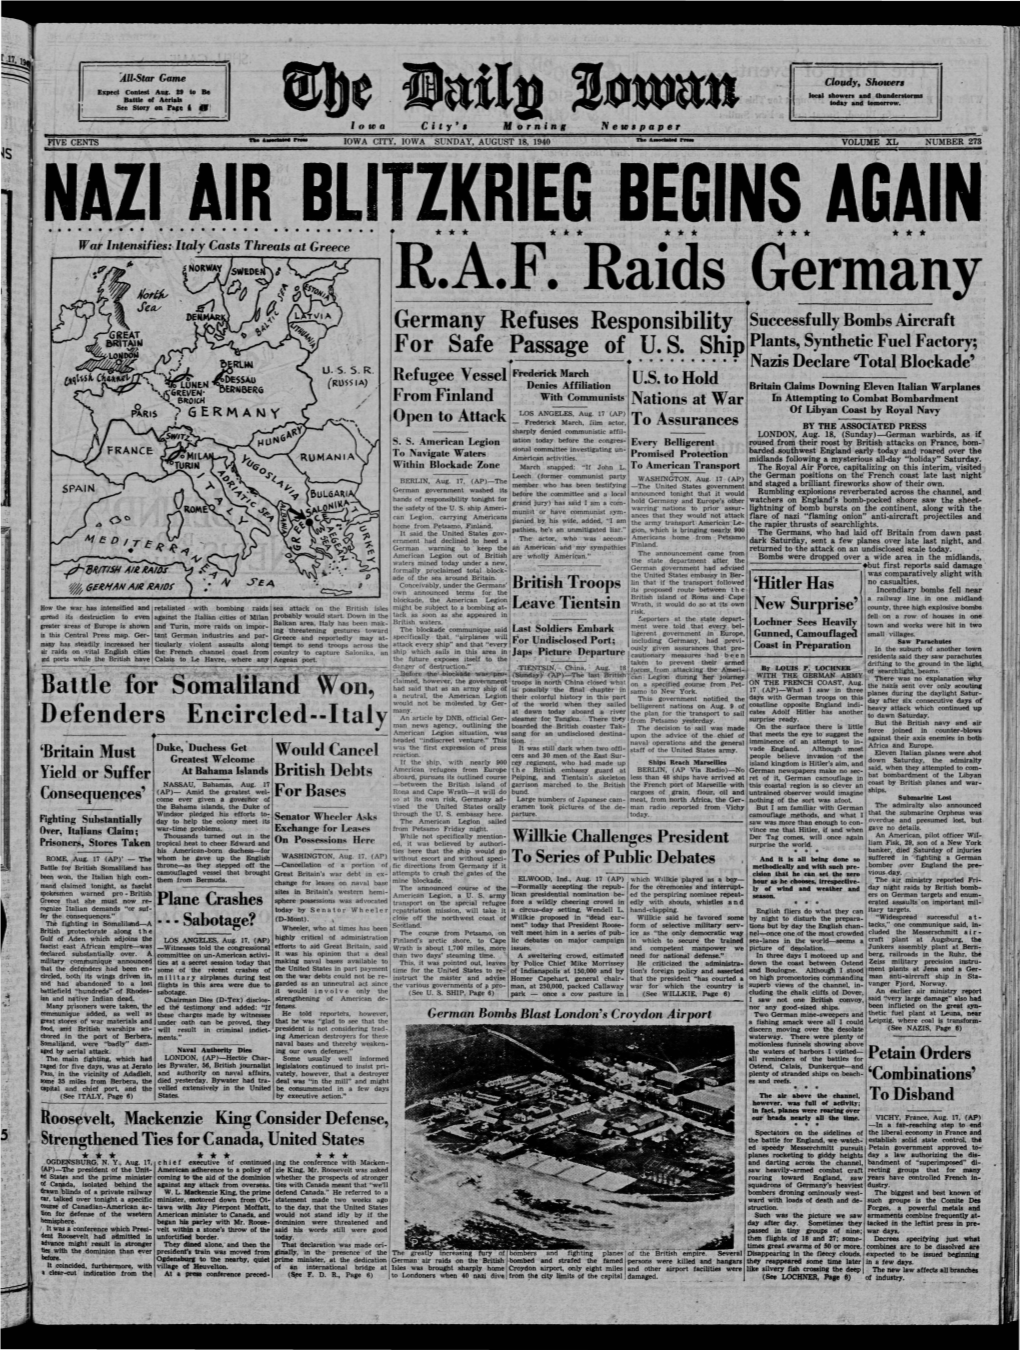 Daily Iowan (Iowa City, Iowa), 1940-08-18